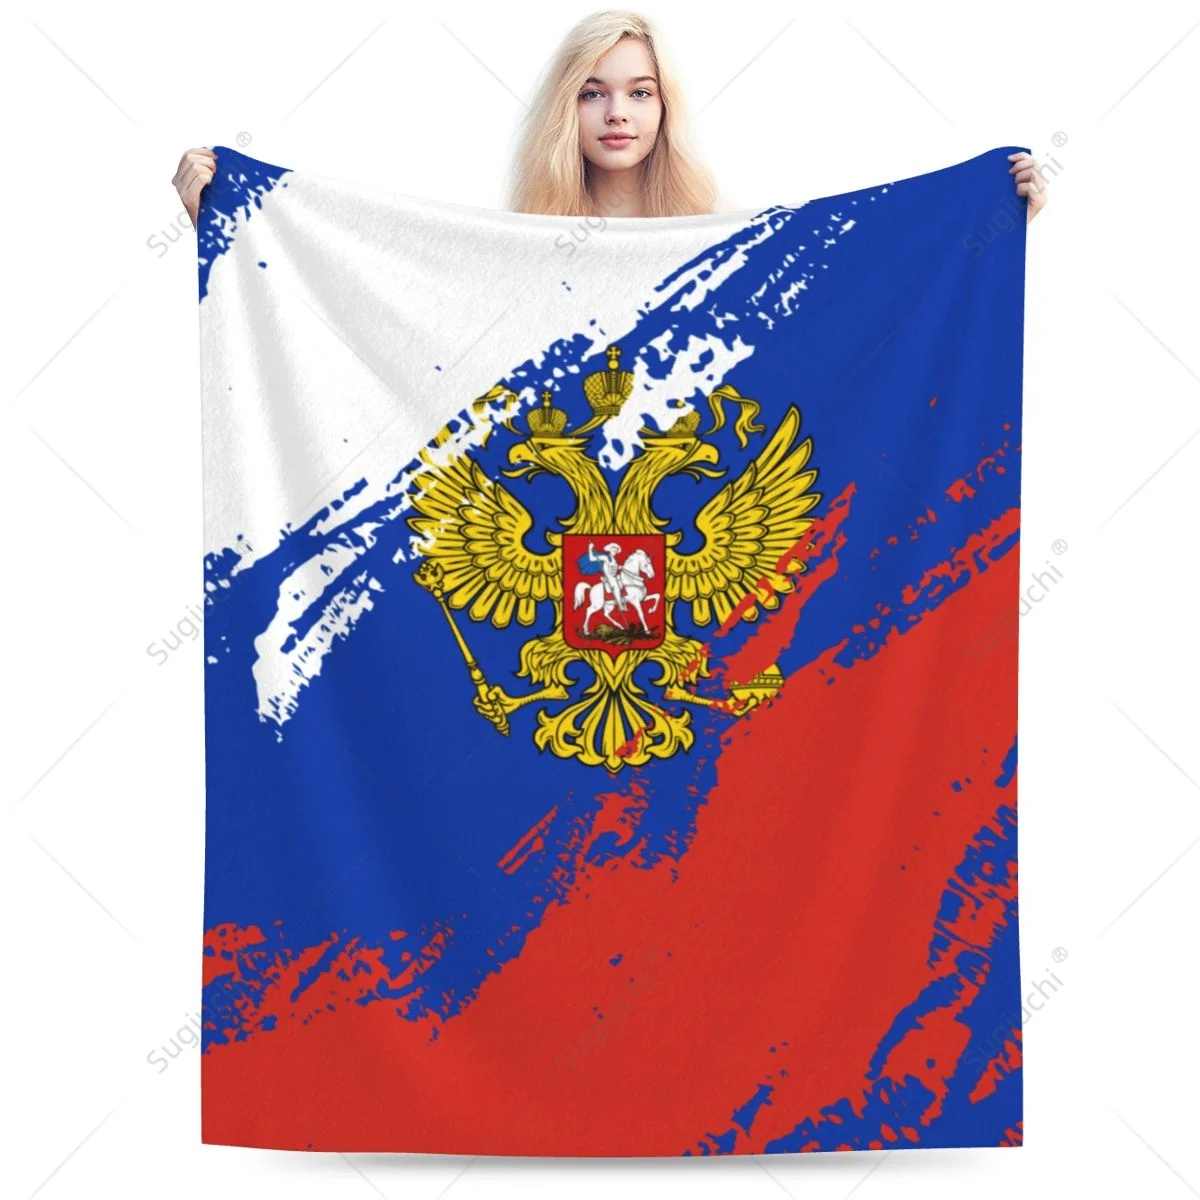 

Одеяло с российским флагом, цветной фланелевый многофункциональный чехол для кемпинга и дивана, сохраняет тепло